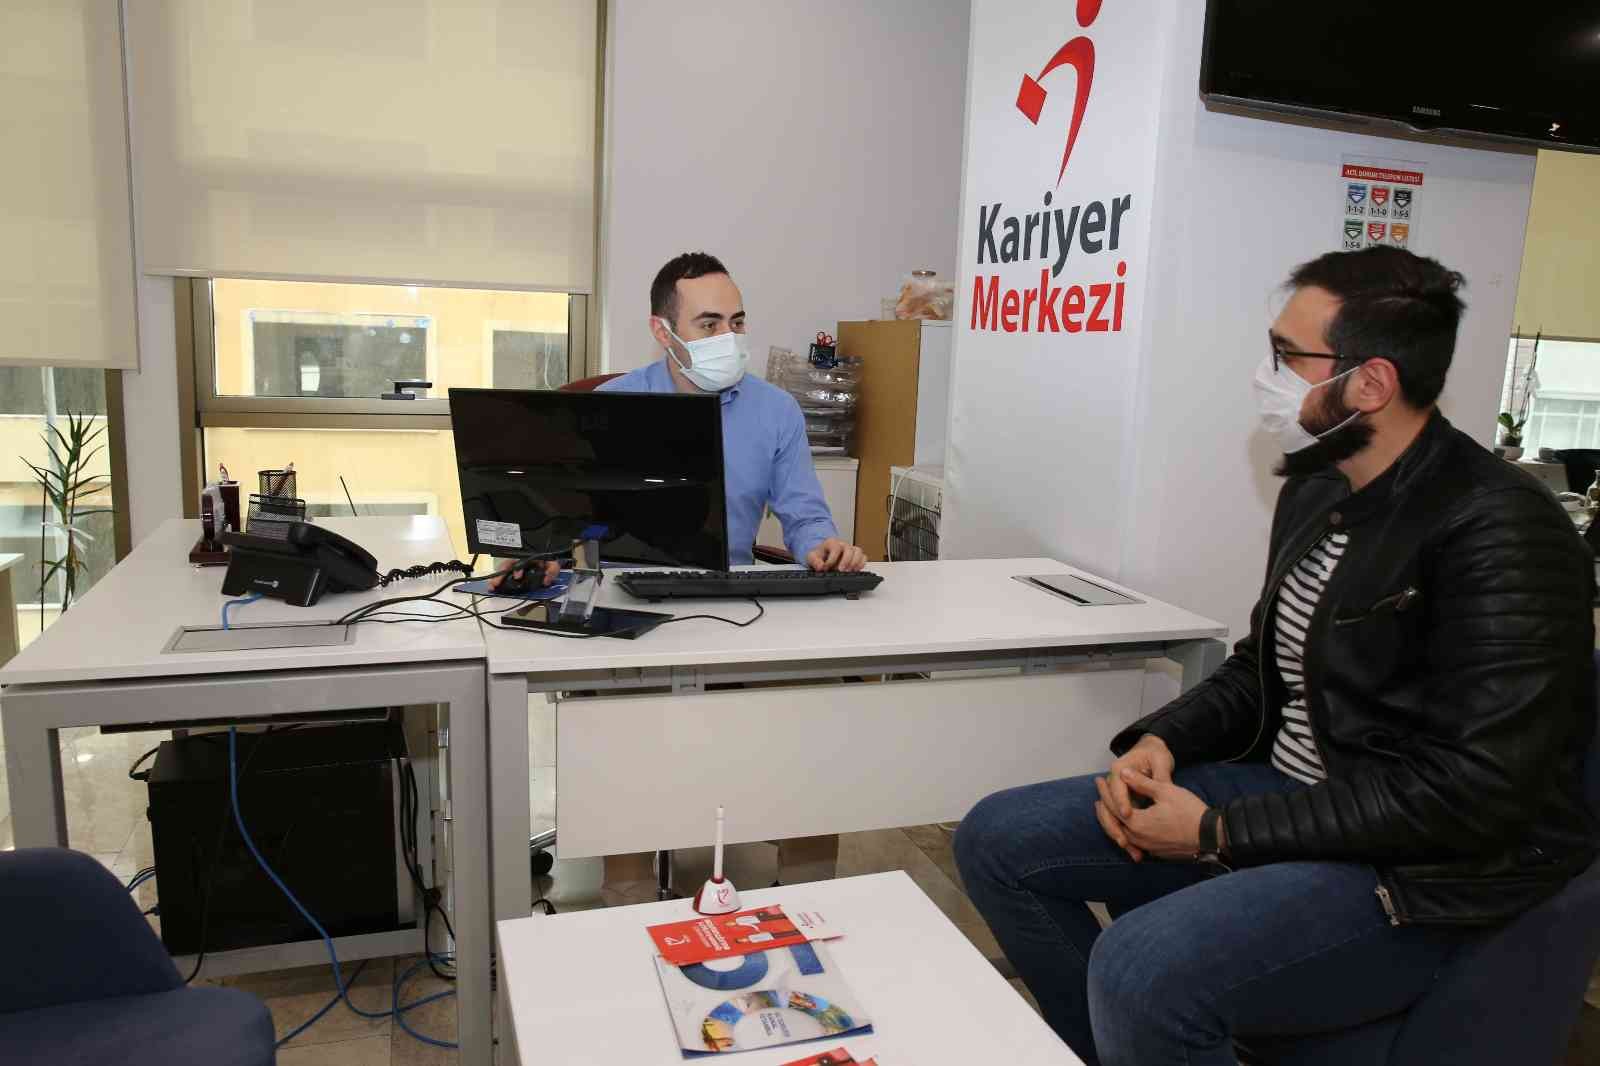 Güngören Belediyesi Kariyer Merkezi işe yerleştirmede bir yılda yüzde 80 artış sağladı #istanbul